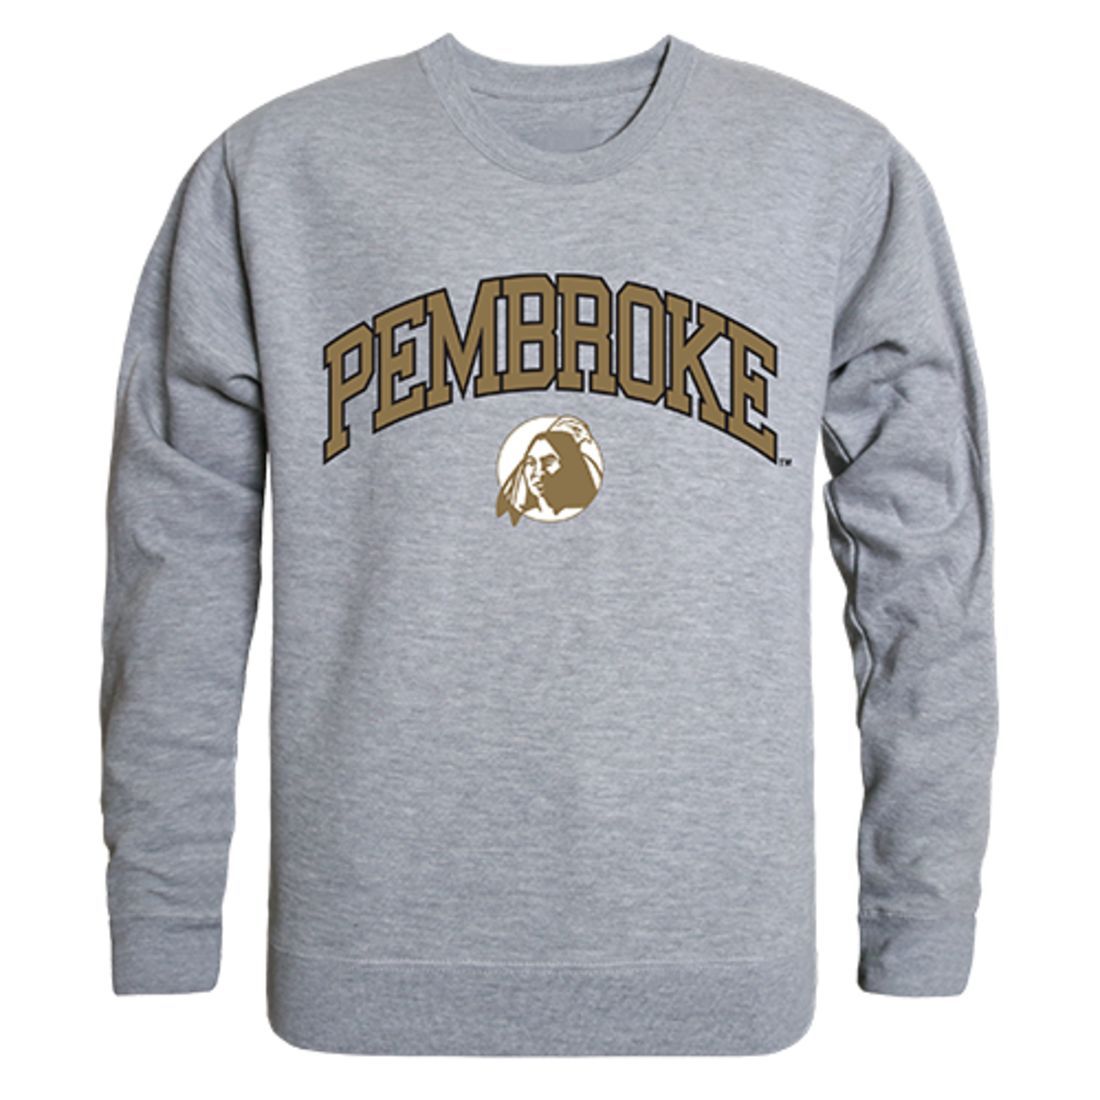 UNCP University of North Carolina at Pembroke Campus Crewneck Pullover Sweatshirt Sweater Heather Grey-Campus-Wardrobe